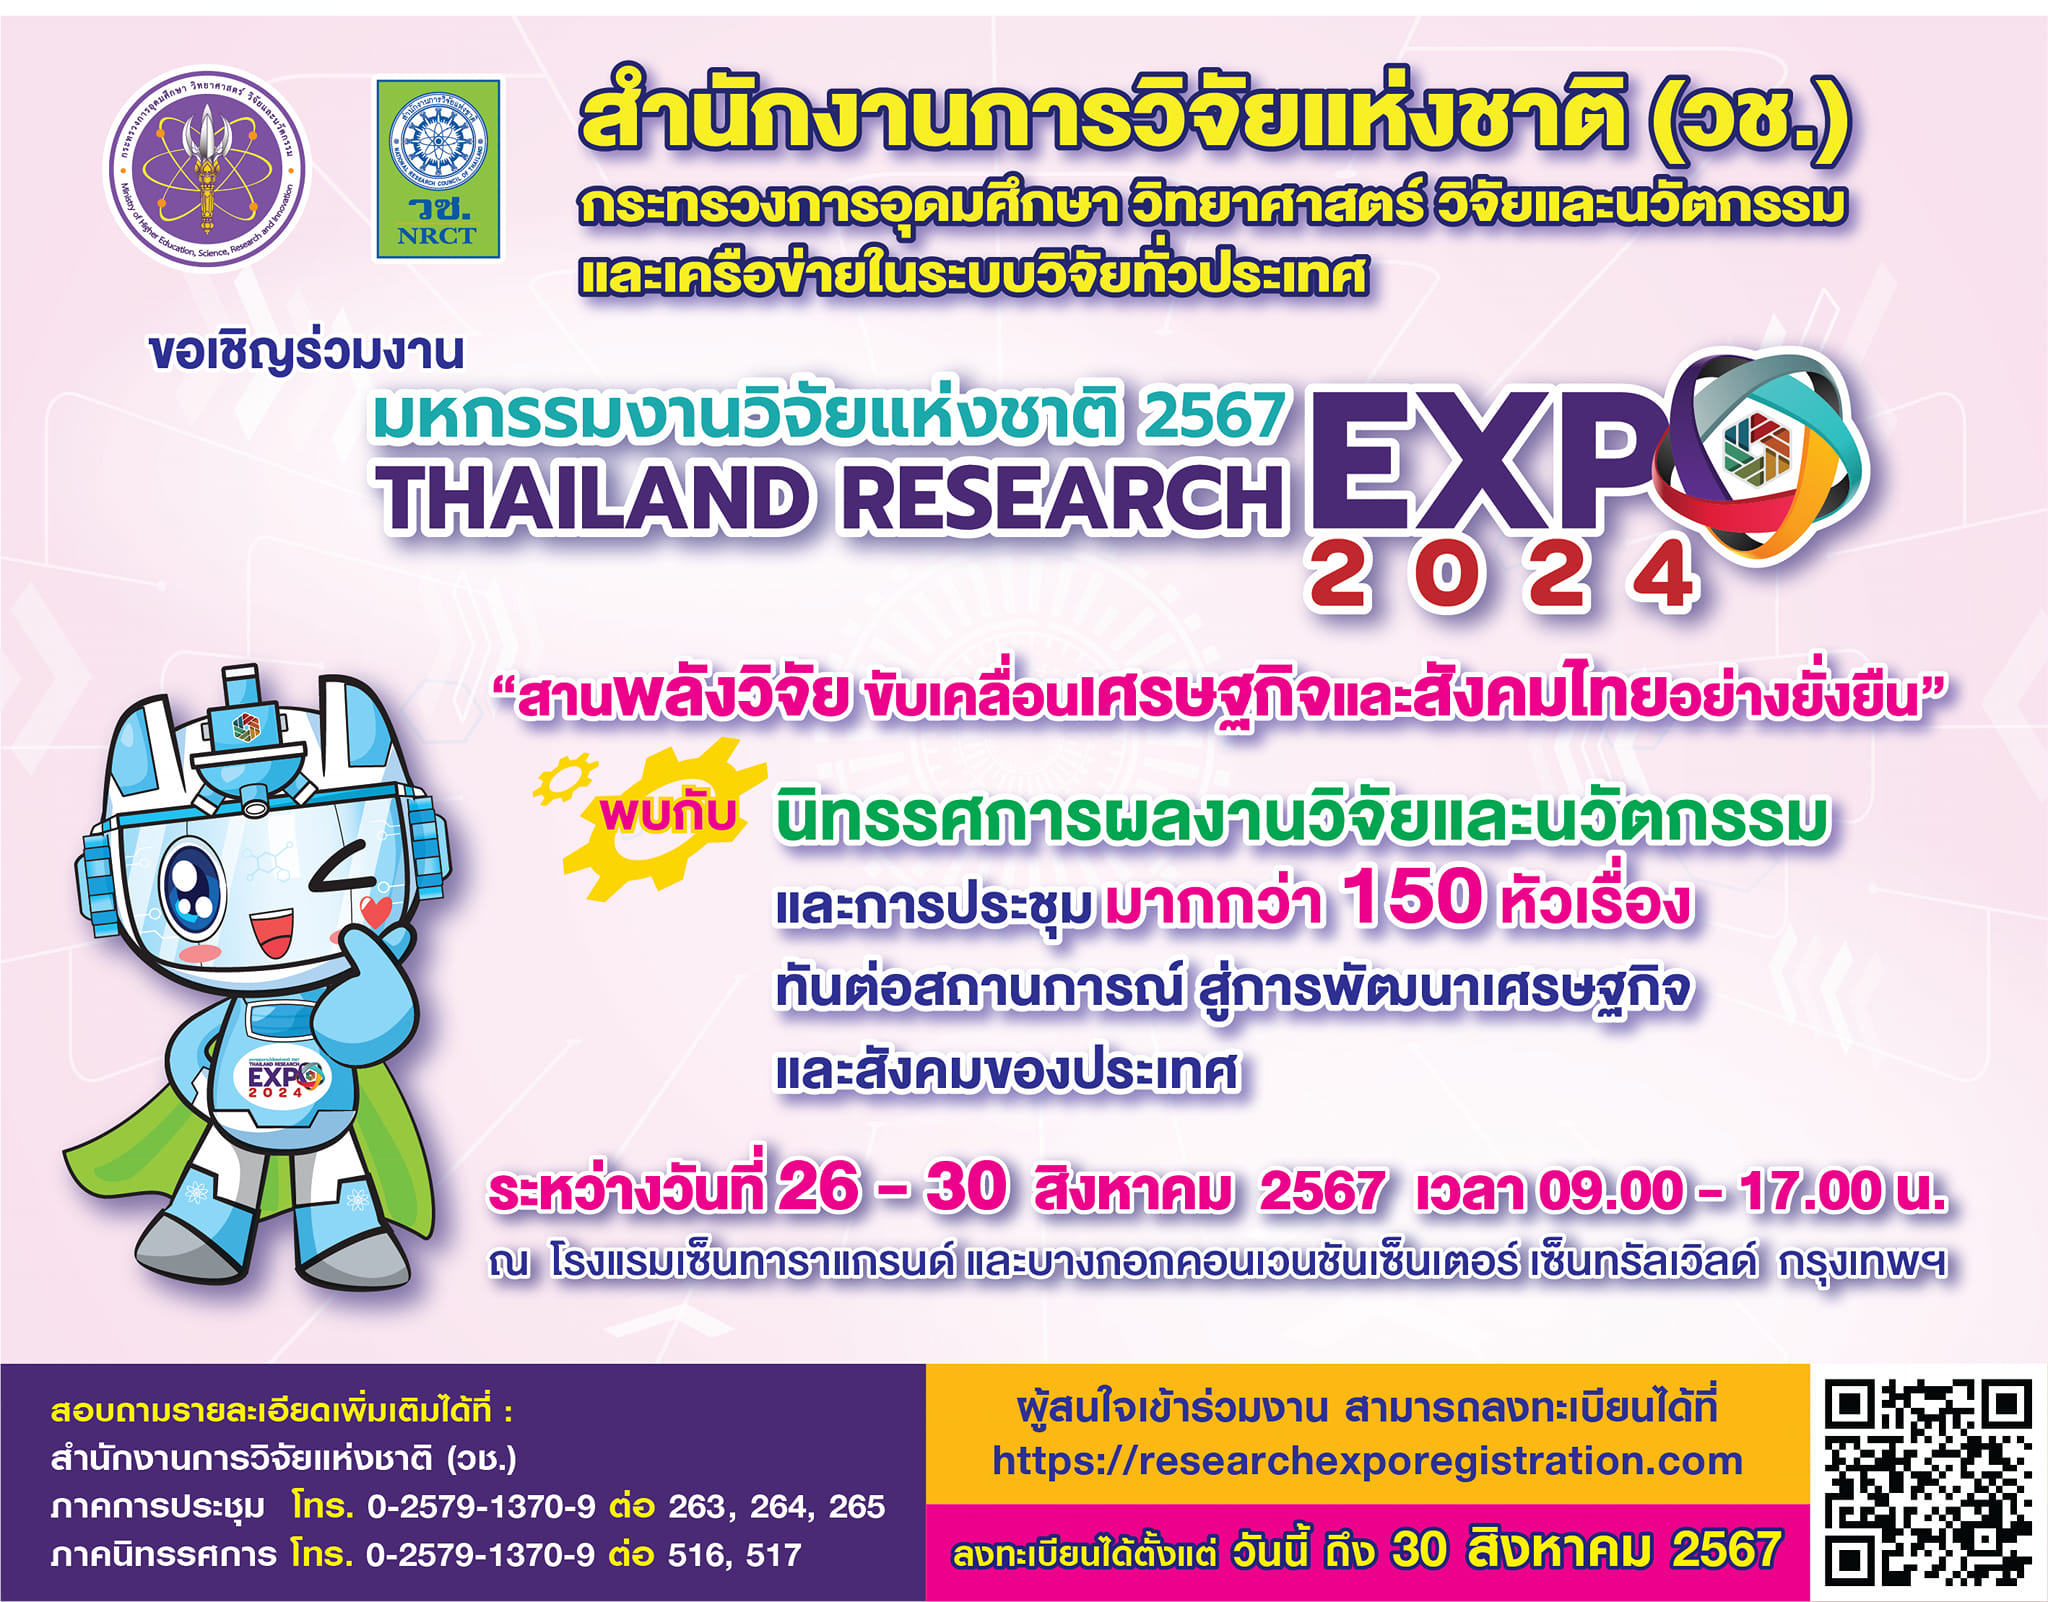 ประชาสัมพันธ์เชิญชวนเข้าร่วมงาน “มหกรรมงานวิจัยแห่งชาติ ประจำปี 2567 (Thailand Research Expo 2024)”